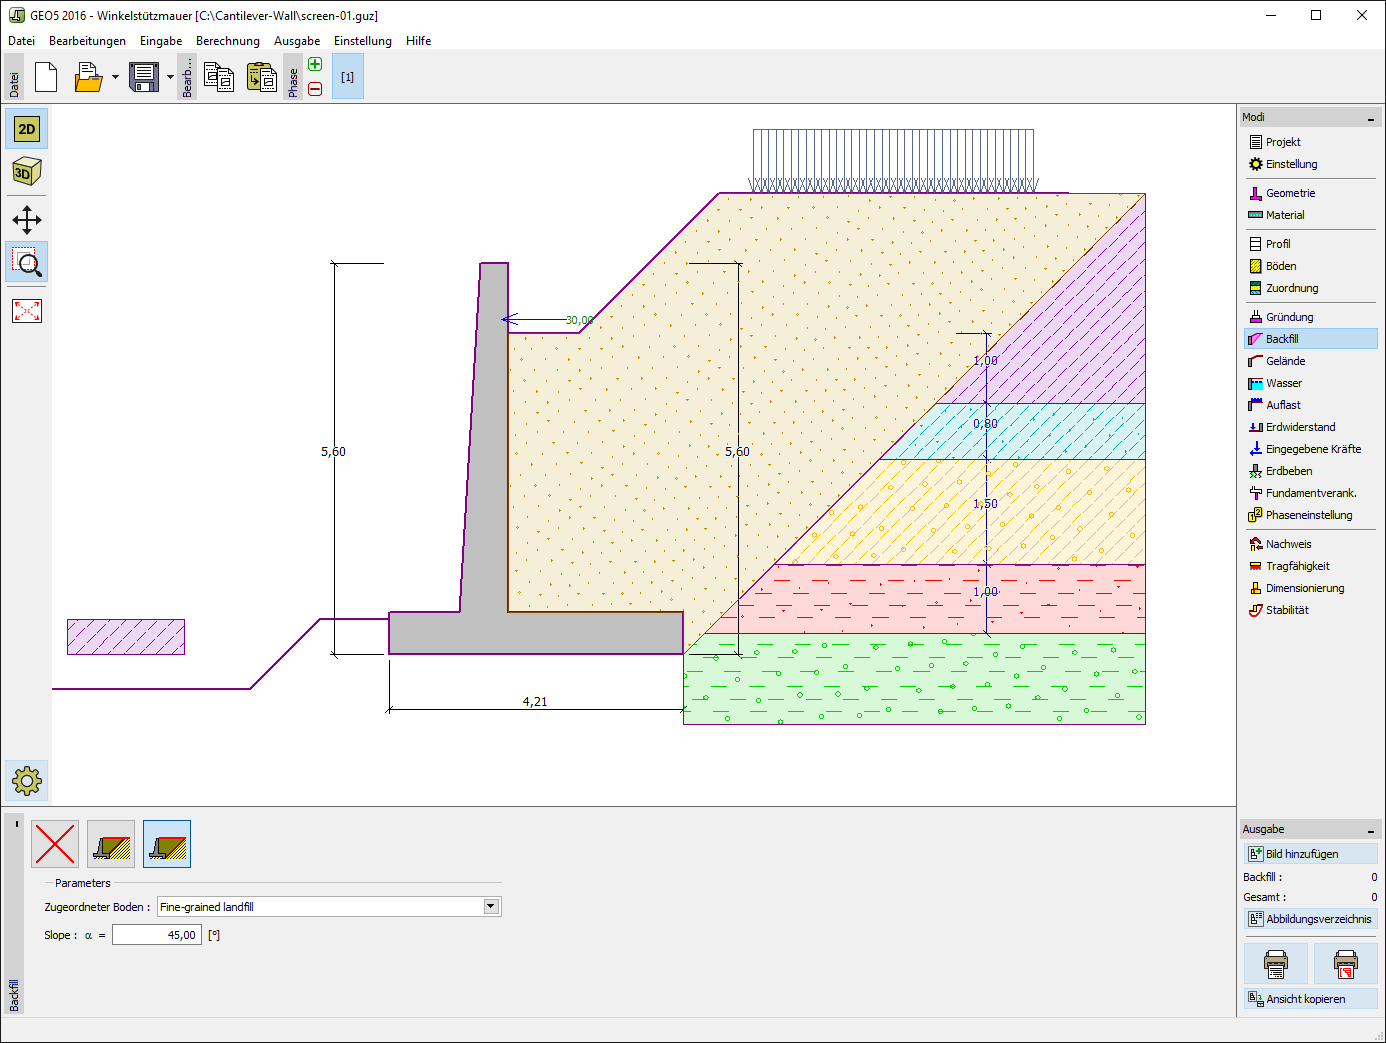 Winkelstützmauer : Eingabe der Geometrie und Form der zu berechnenden Winkelstützwand